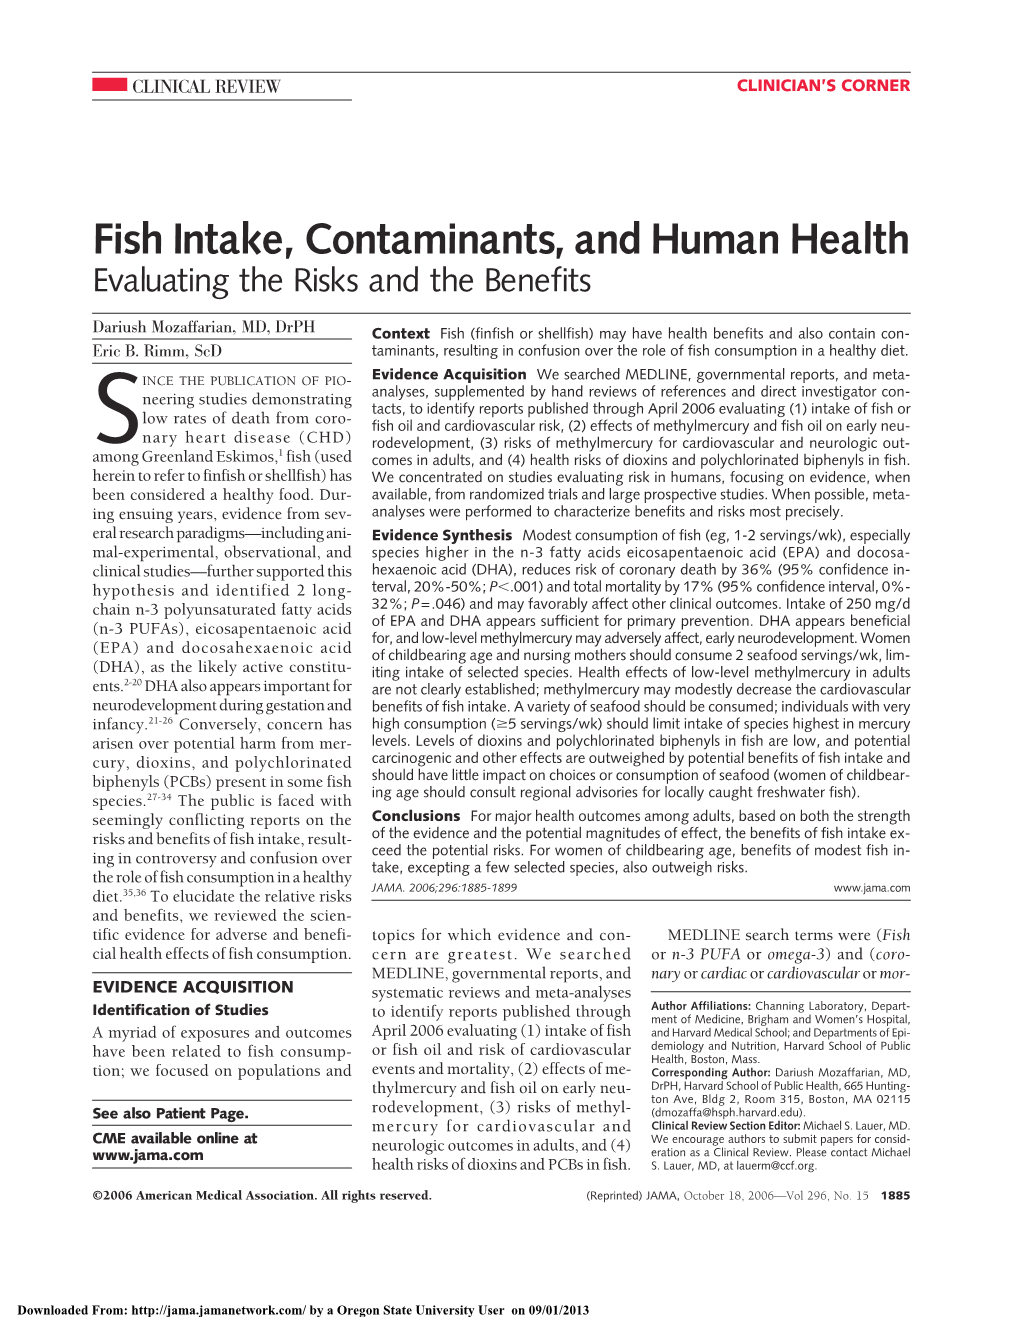 Fish Intake, Contaminants, and Human Health, Evaluating The